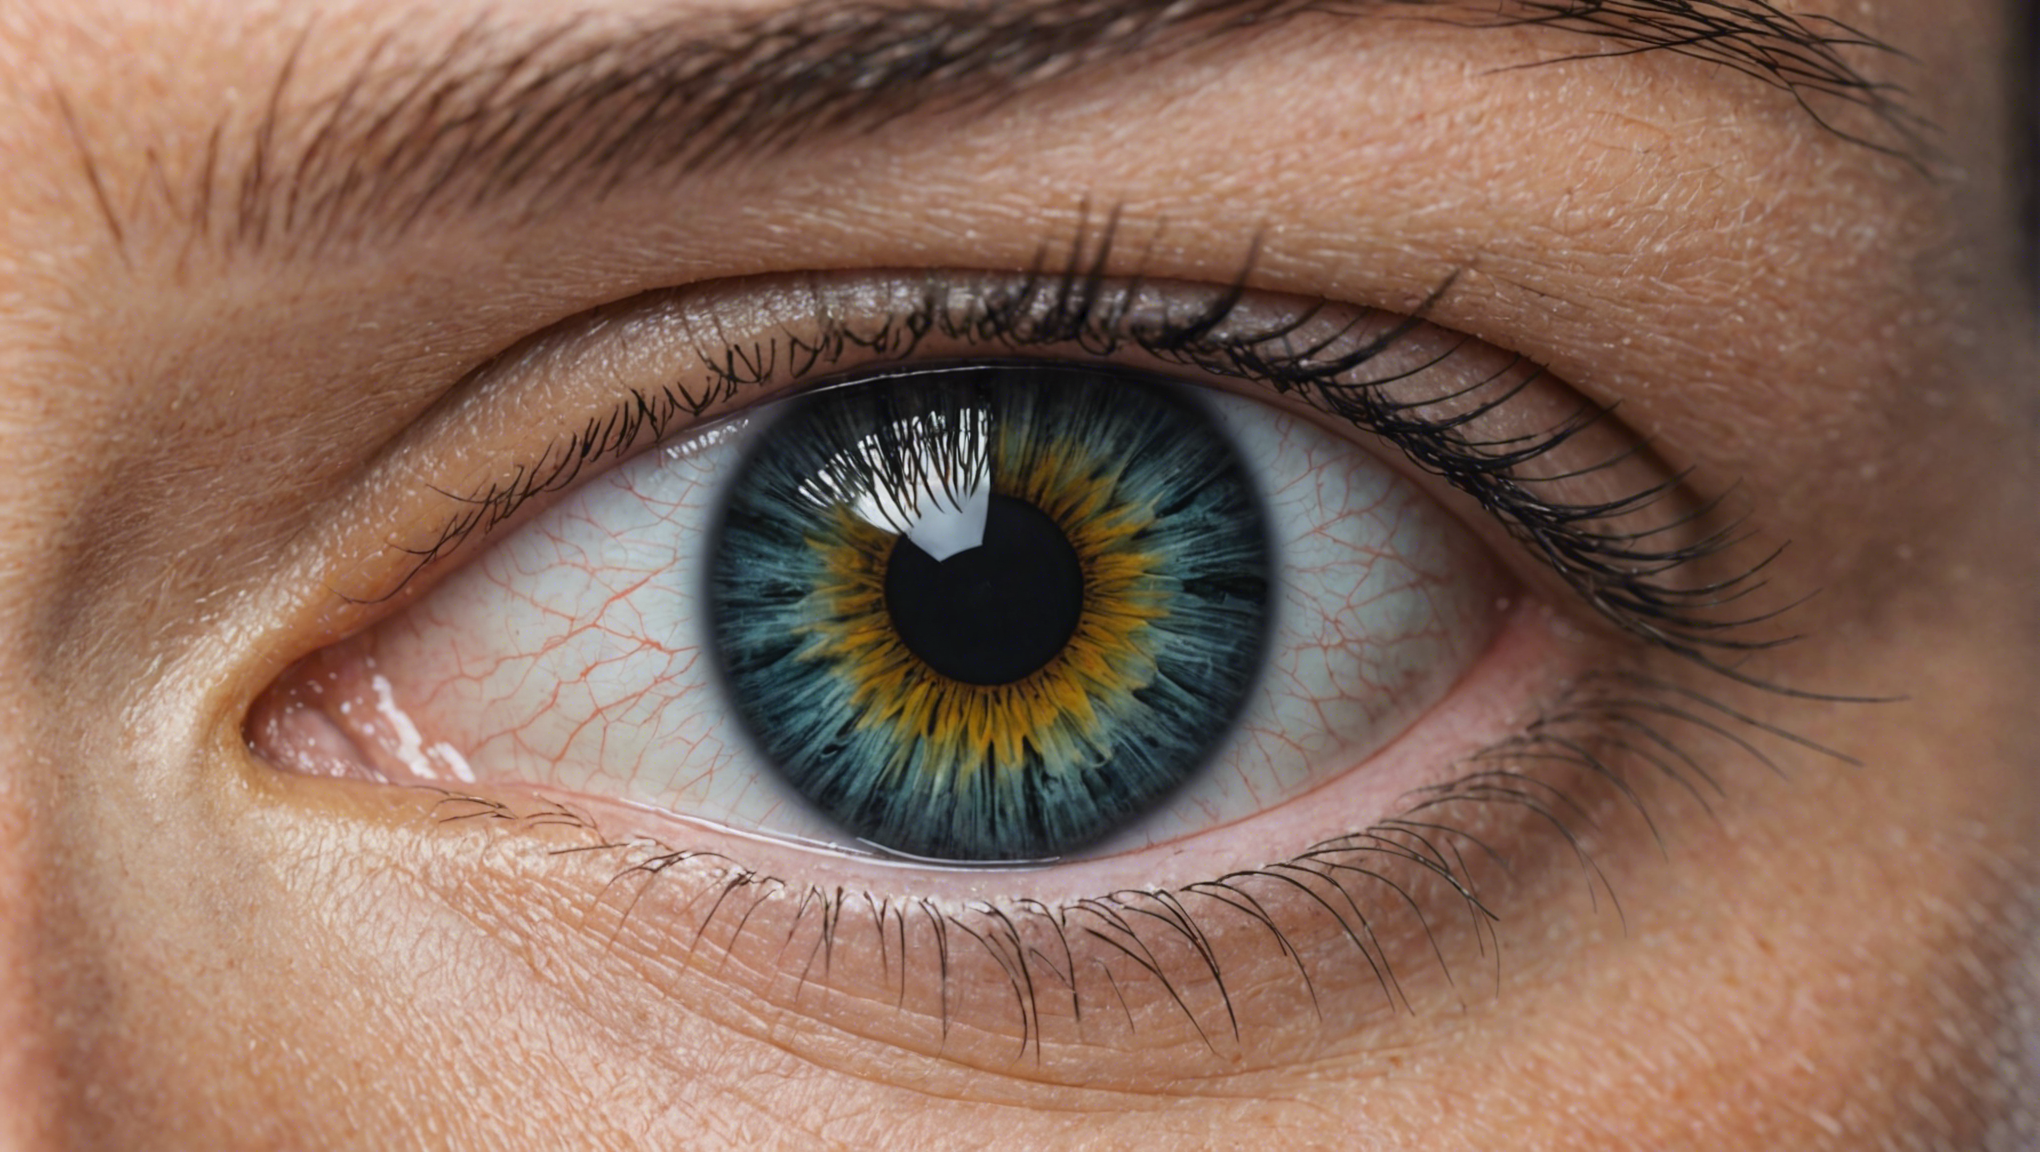 découvrez les avancées majeures dans le traitement du glaucome et les progrès accomplis dans la prise en charge de cette pathologie oculaire.